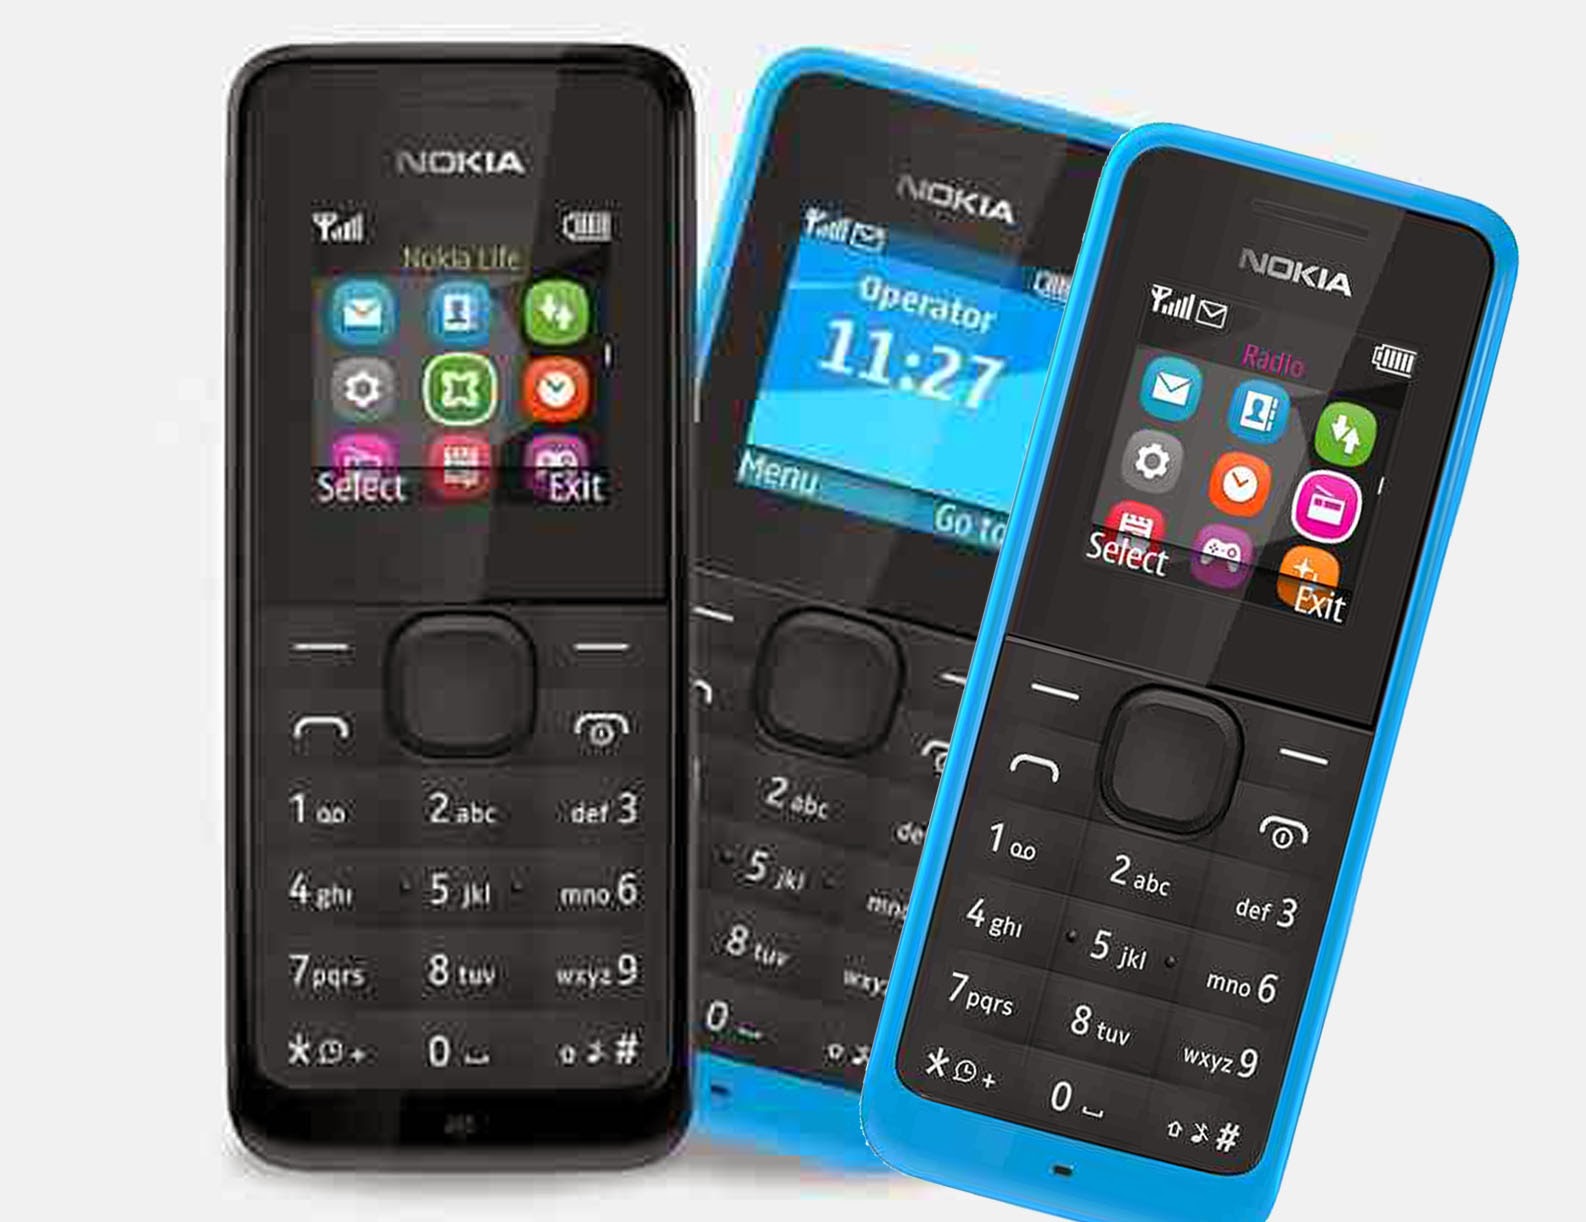 Nokia2010520RM 908